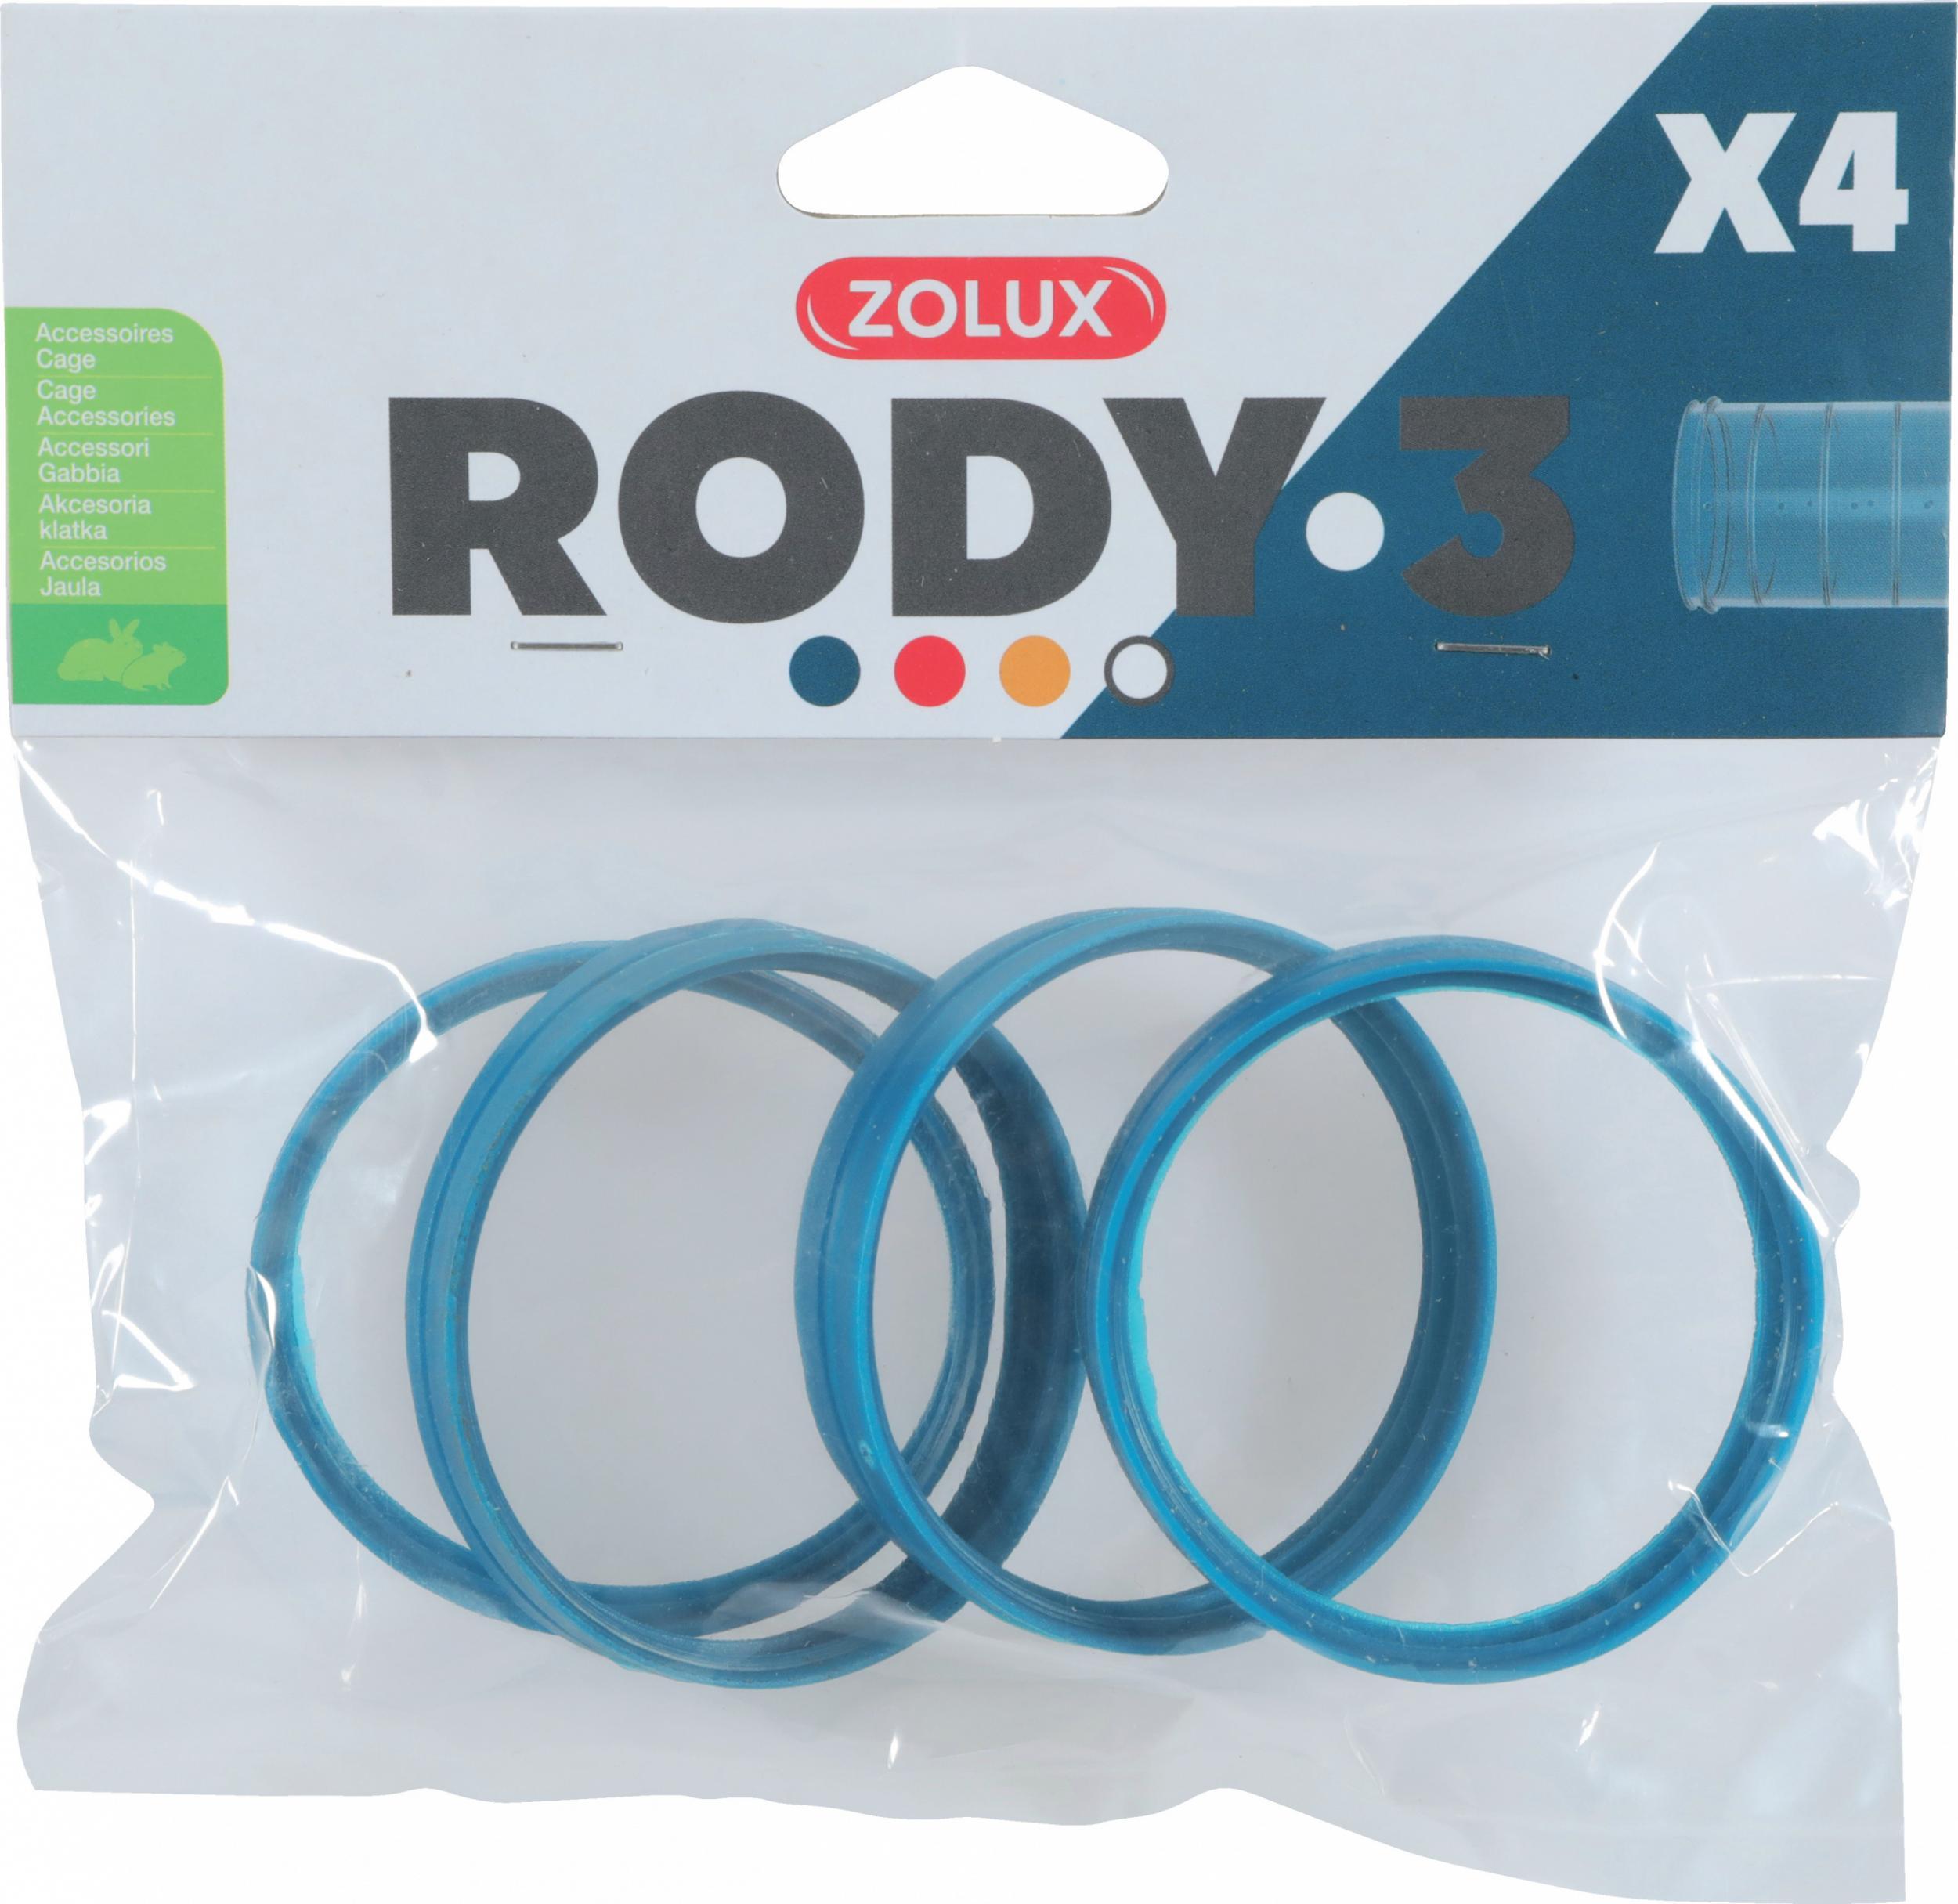 Zolux ZOLUX Zlaczka RODY3 4 szt. kol. niebieski VAT015012 (3336022060331) grauzējiem